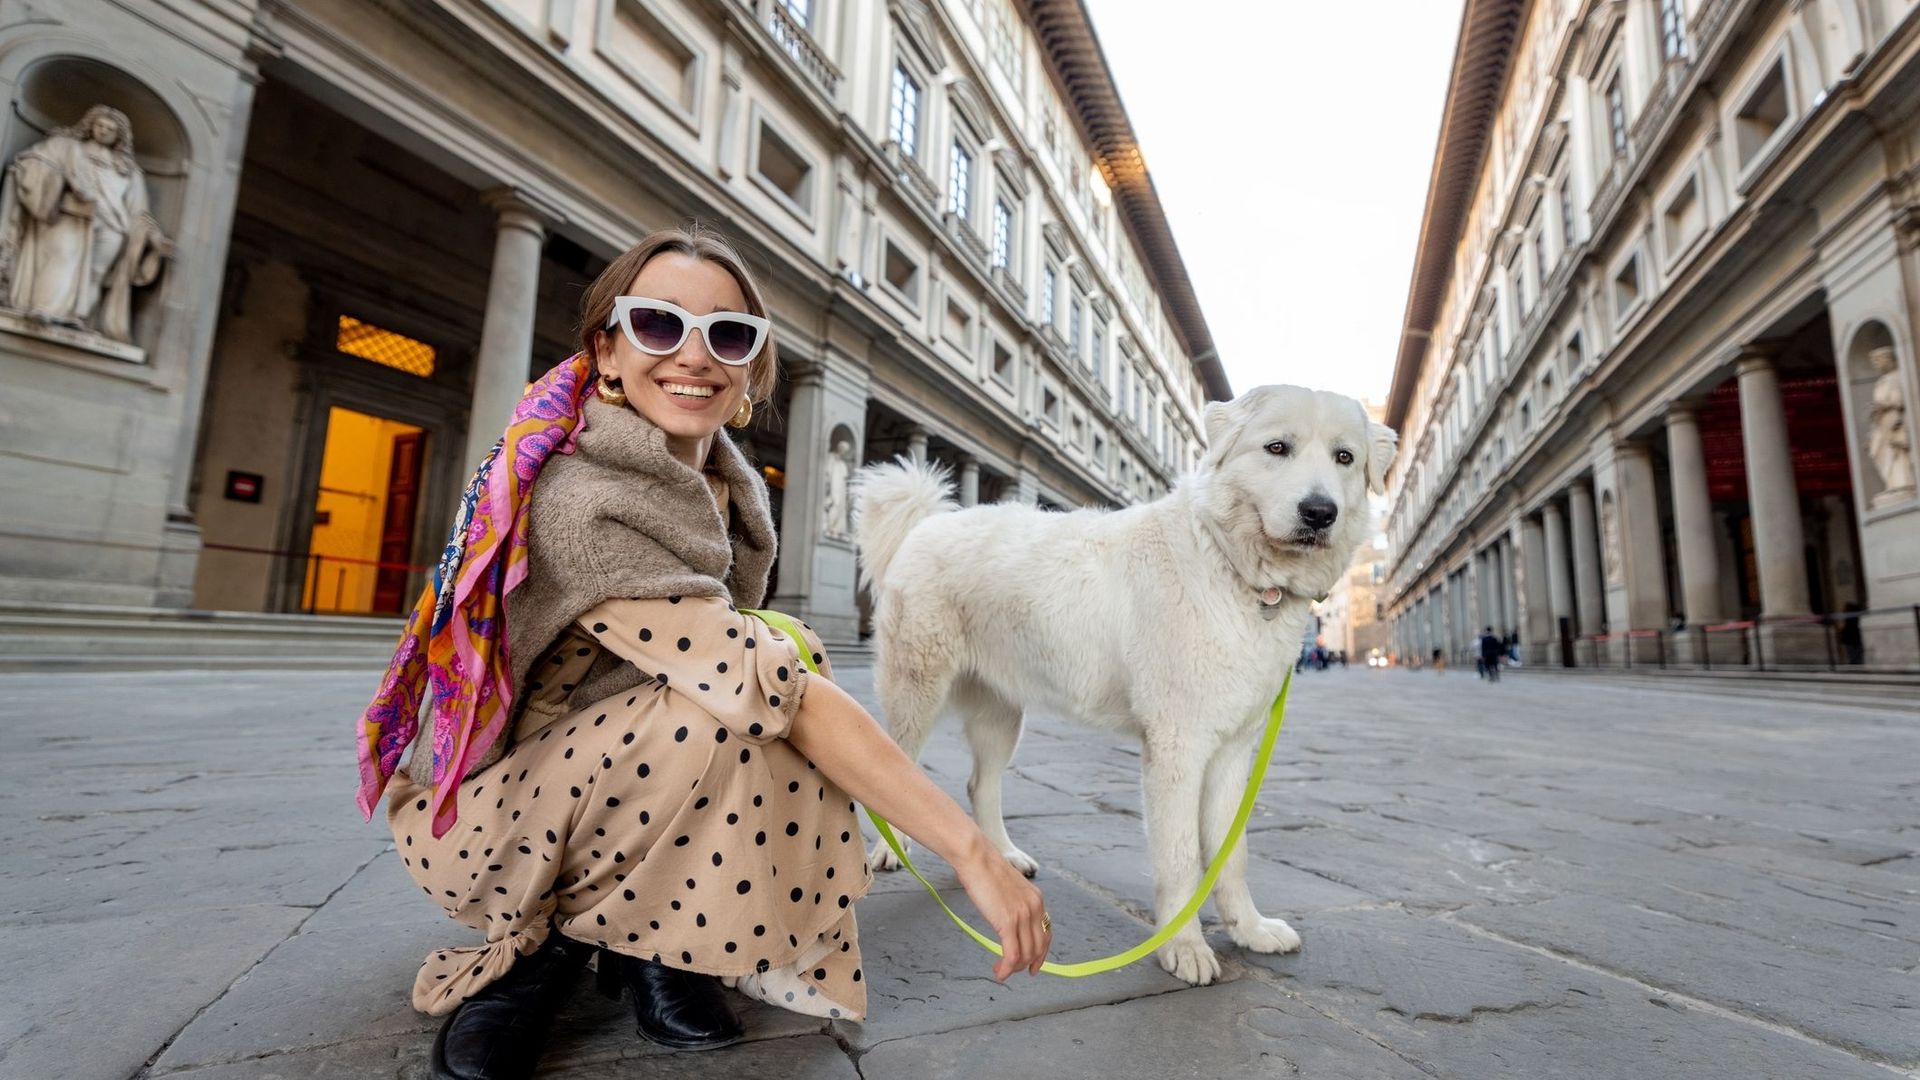 Certains musées et sites touristiques proposent désormais des services de "dog sitting".